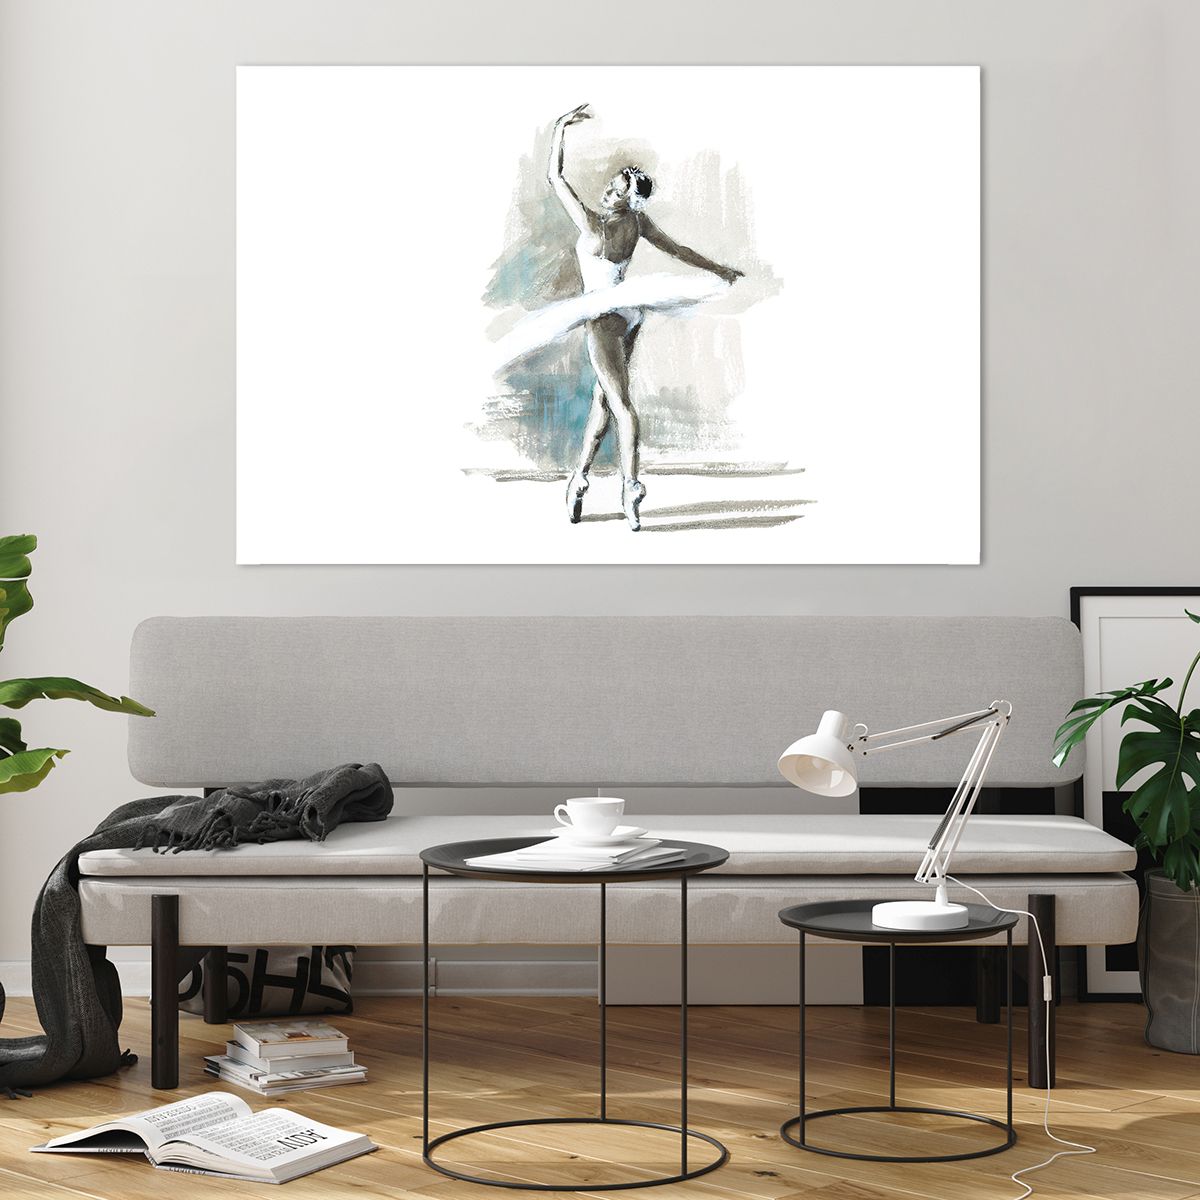 Bild på glas Ballerina, Bild på glas Dansa, Bild på glas Balett, Bild på glas Grafik, Bild på glas Målning